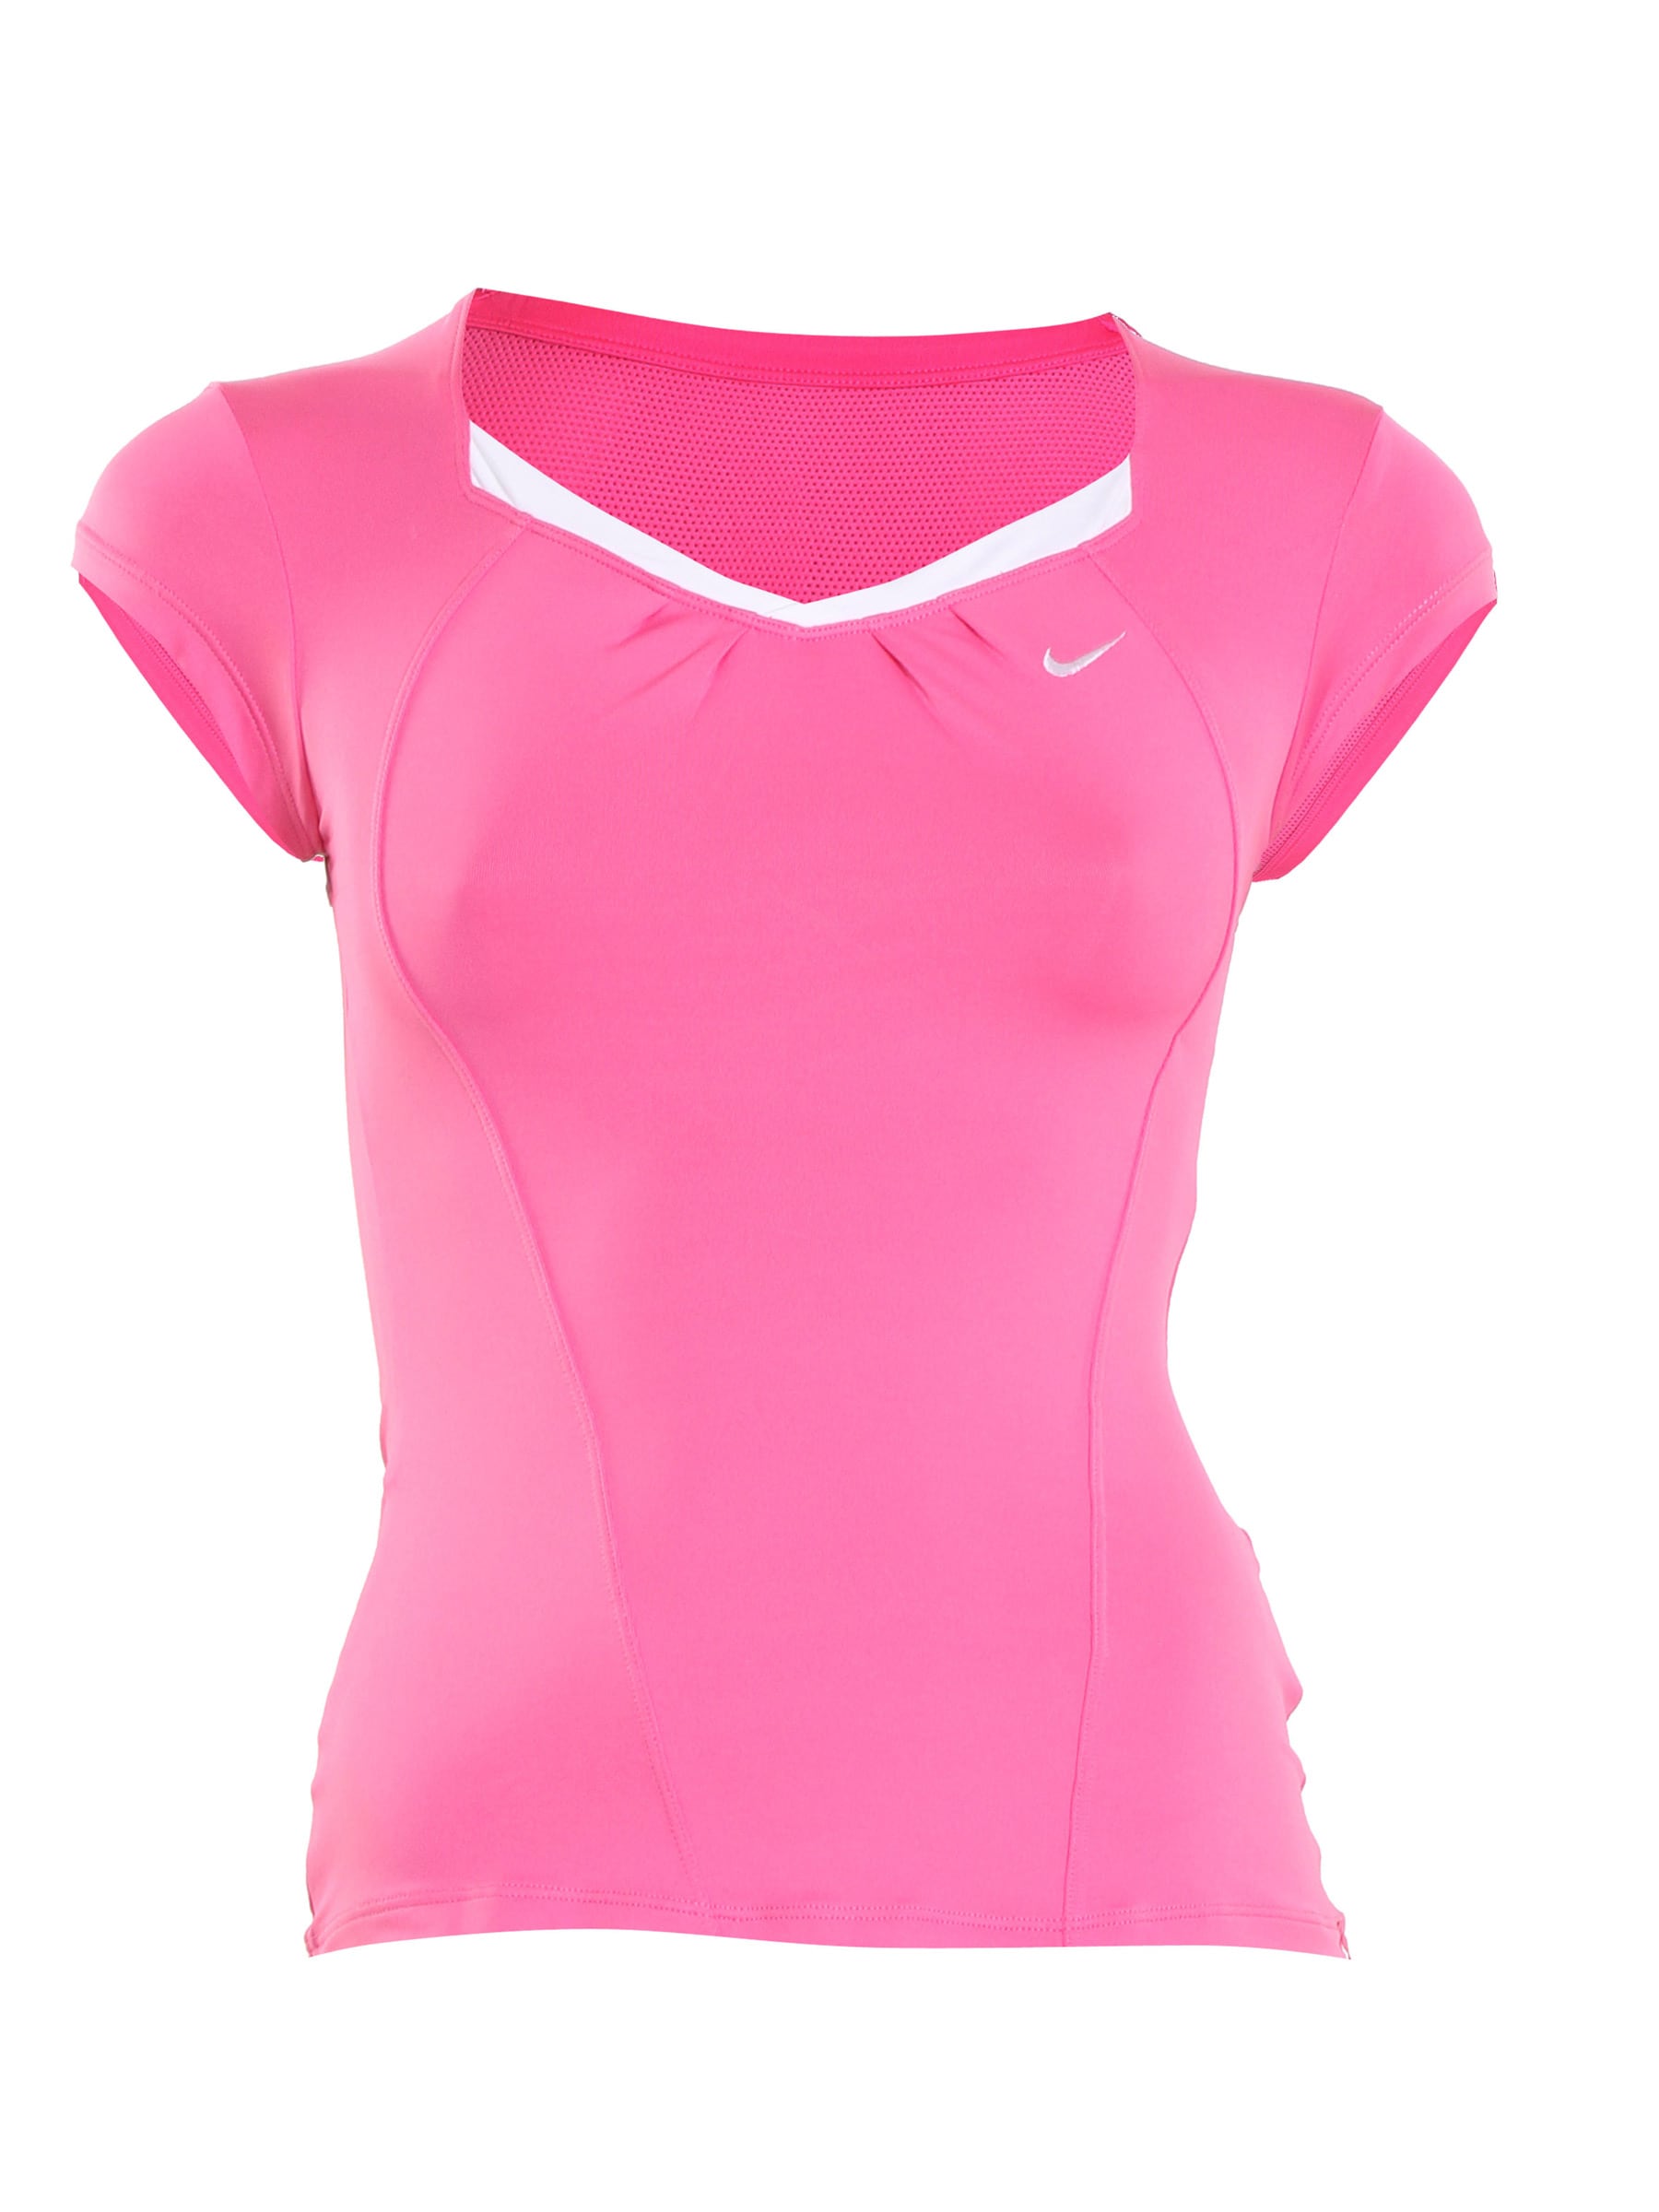 Nike Women Accuracy Pink T-shirt